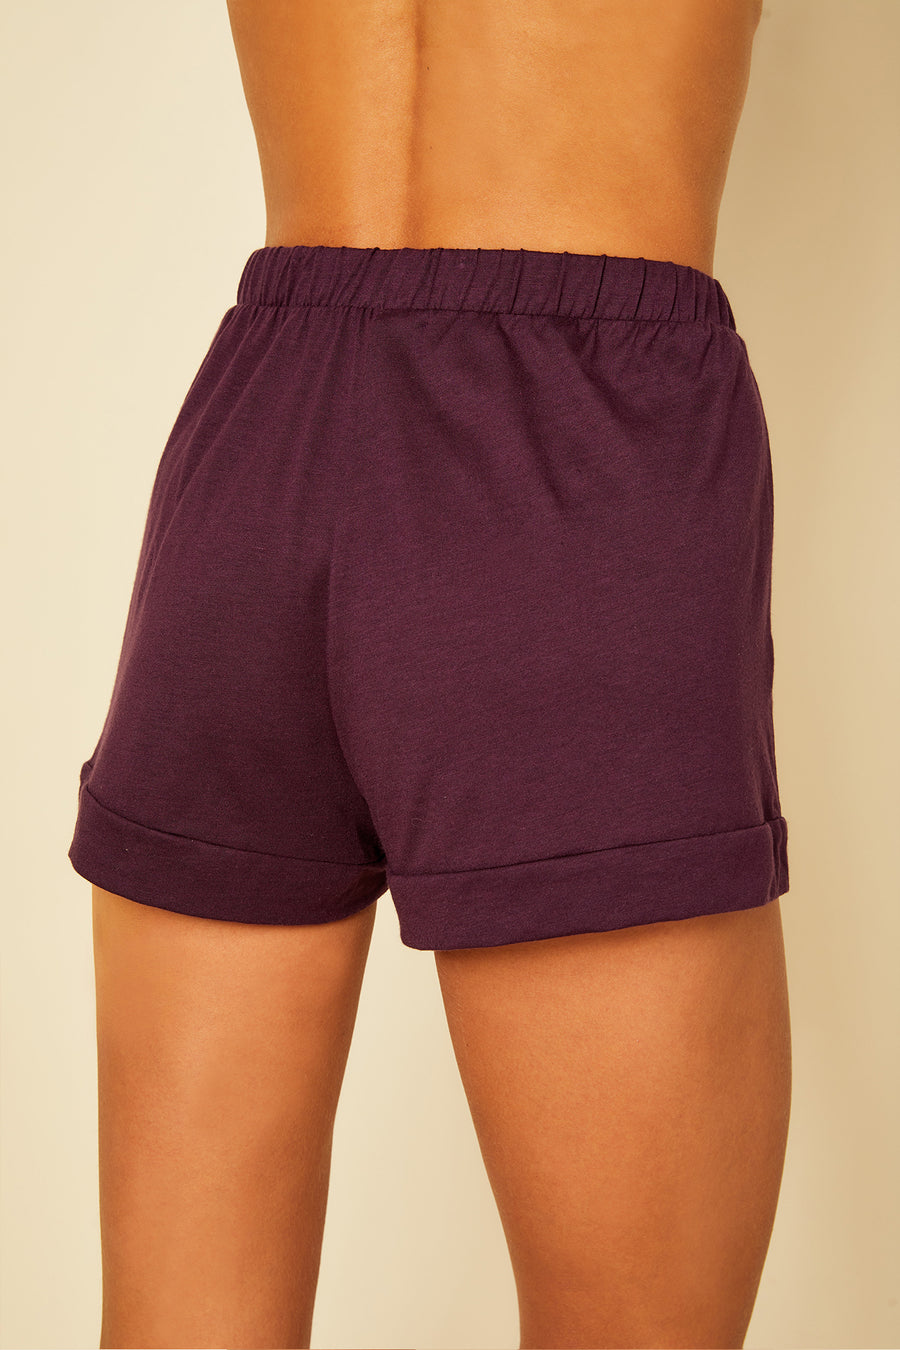 Púrpura Bóxers - Bella Pantalones Cortos